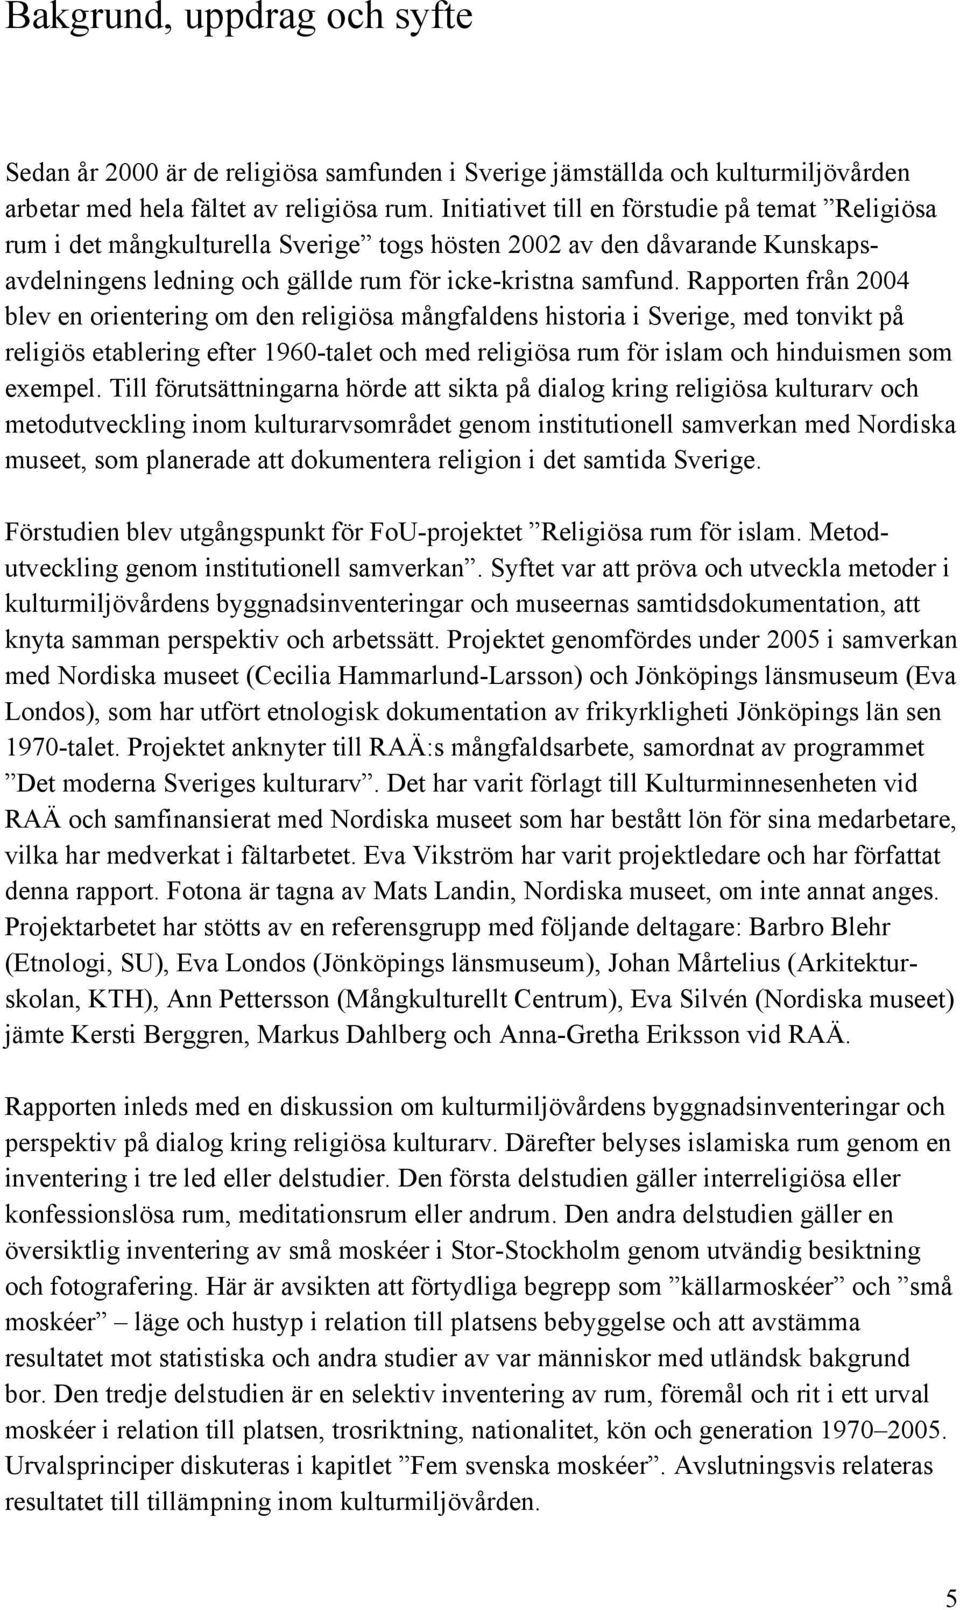 Rapporten från 2004 blev en orientering om den religiösa mångfaldens historia i Sverige, med tonvikt på religiös etablering efter 1960-talet och med religiösa rum för islam och hinduismen som exempel.